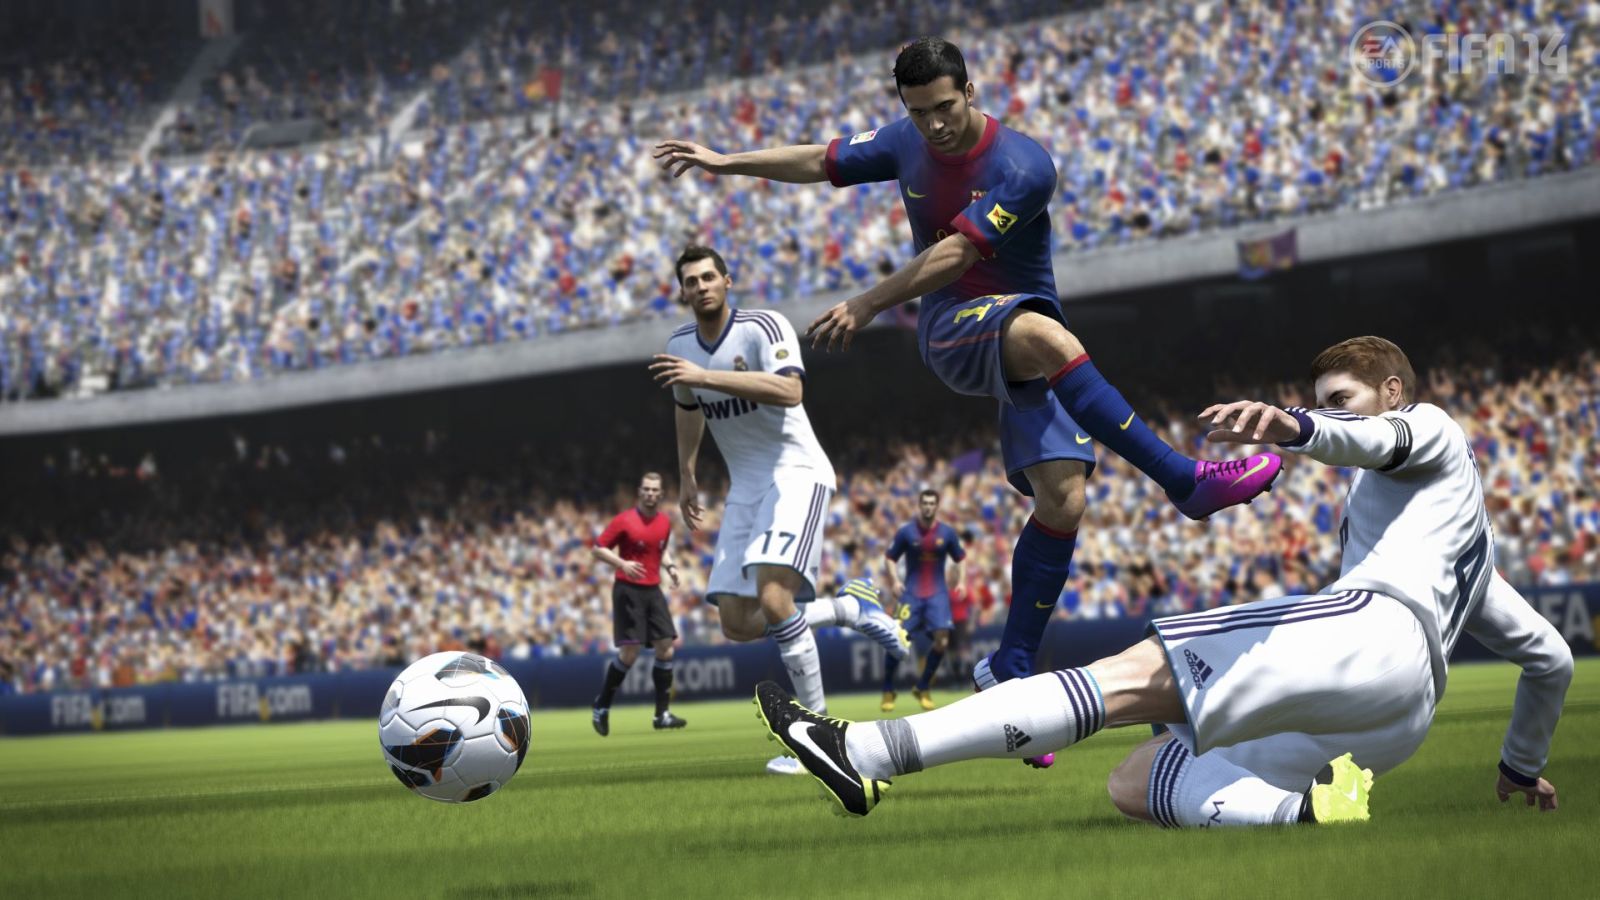 FIFA 14 01 EA SPORTS FIFA Ultimate Team: World Cup als kostenloses Update für FIFA 14